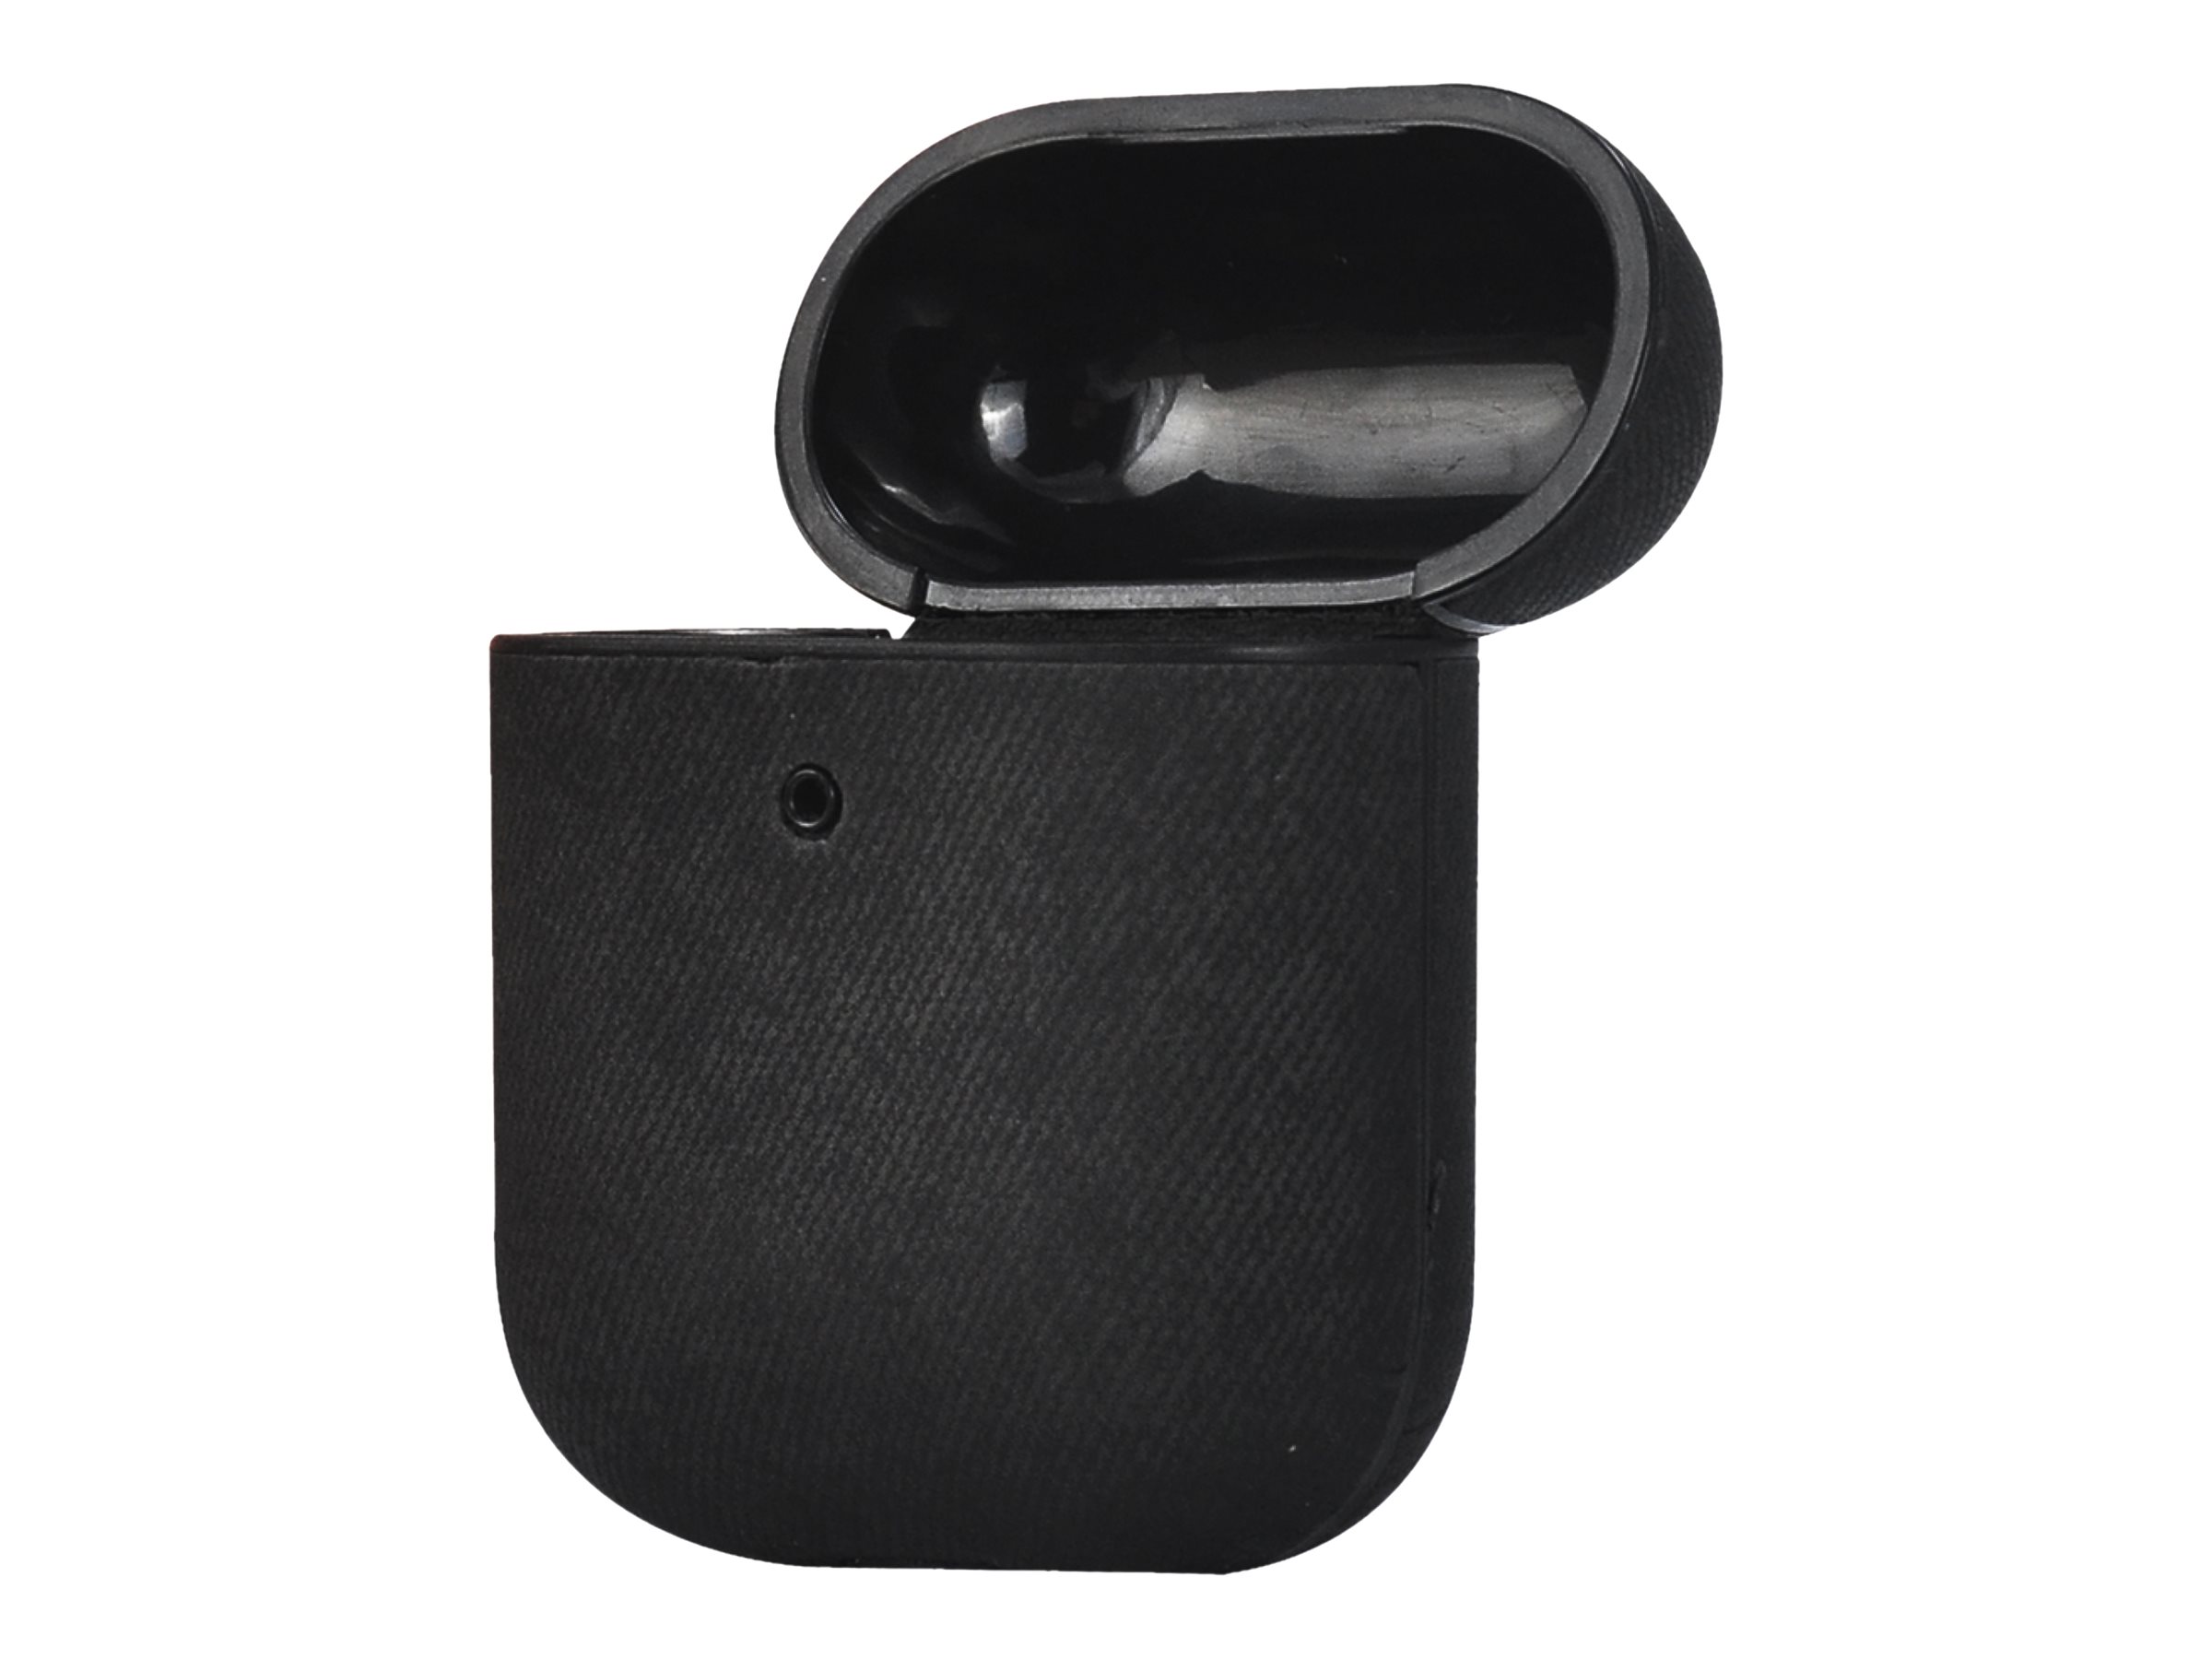 TerraTec Air Box - Tasche für Kopfhöhrer - Polycarbonat - schwarzer Stoff - für Apple AirPods (1. Generation, 2. Generation)